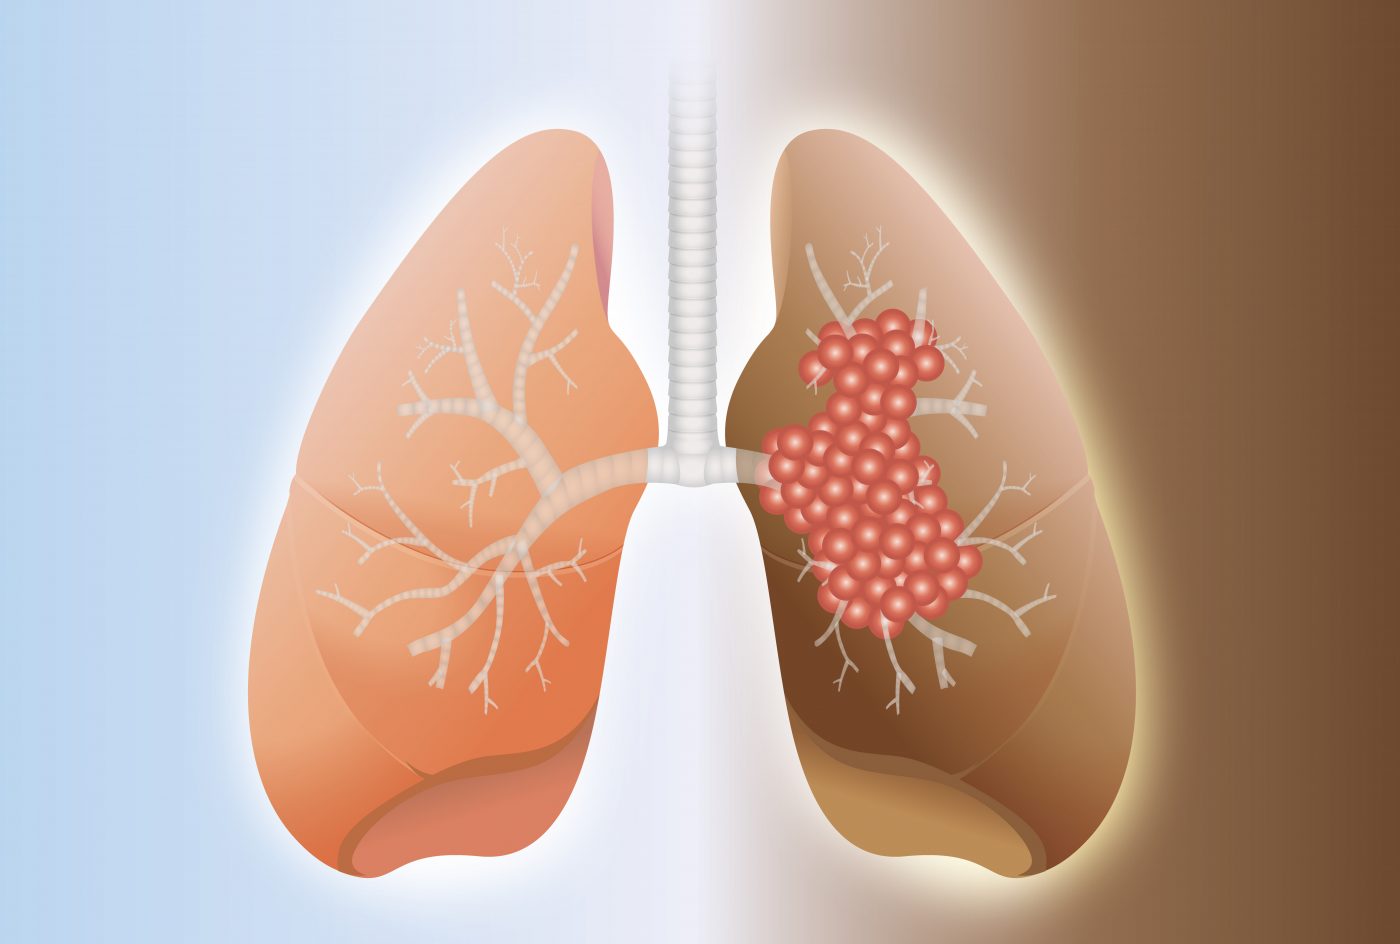 Esbriet, lung cancer